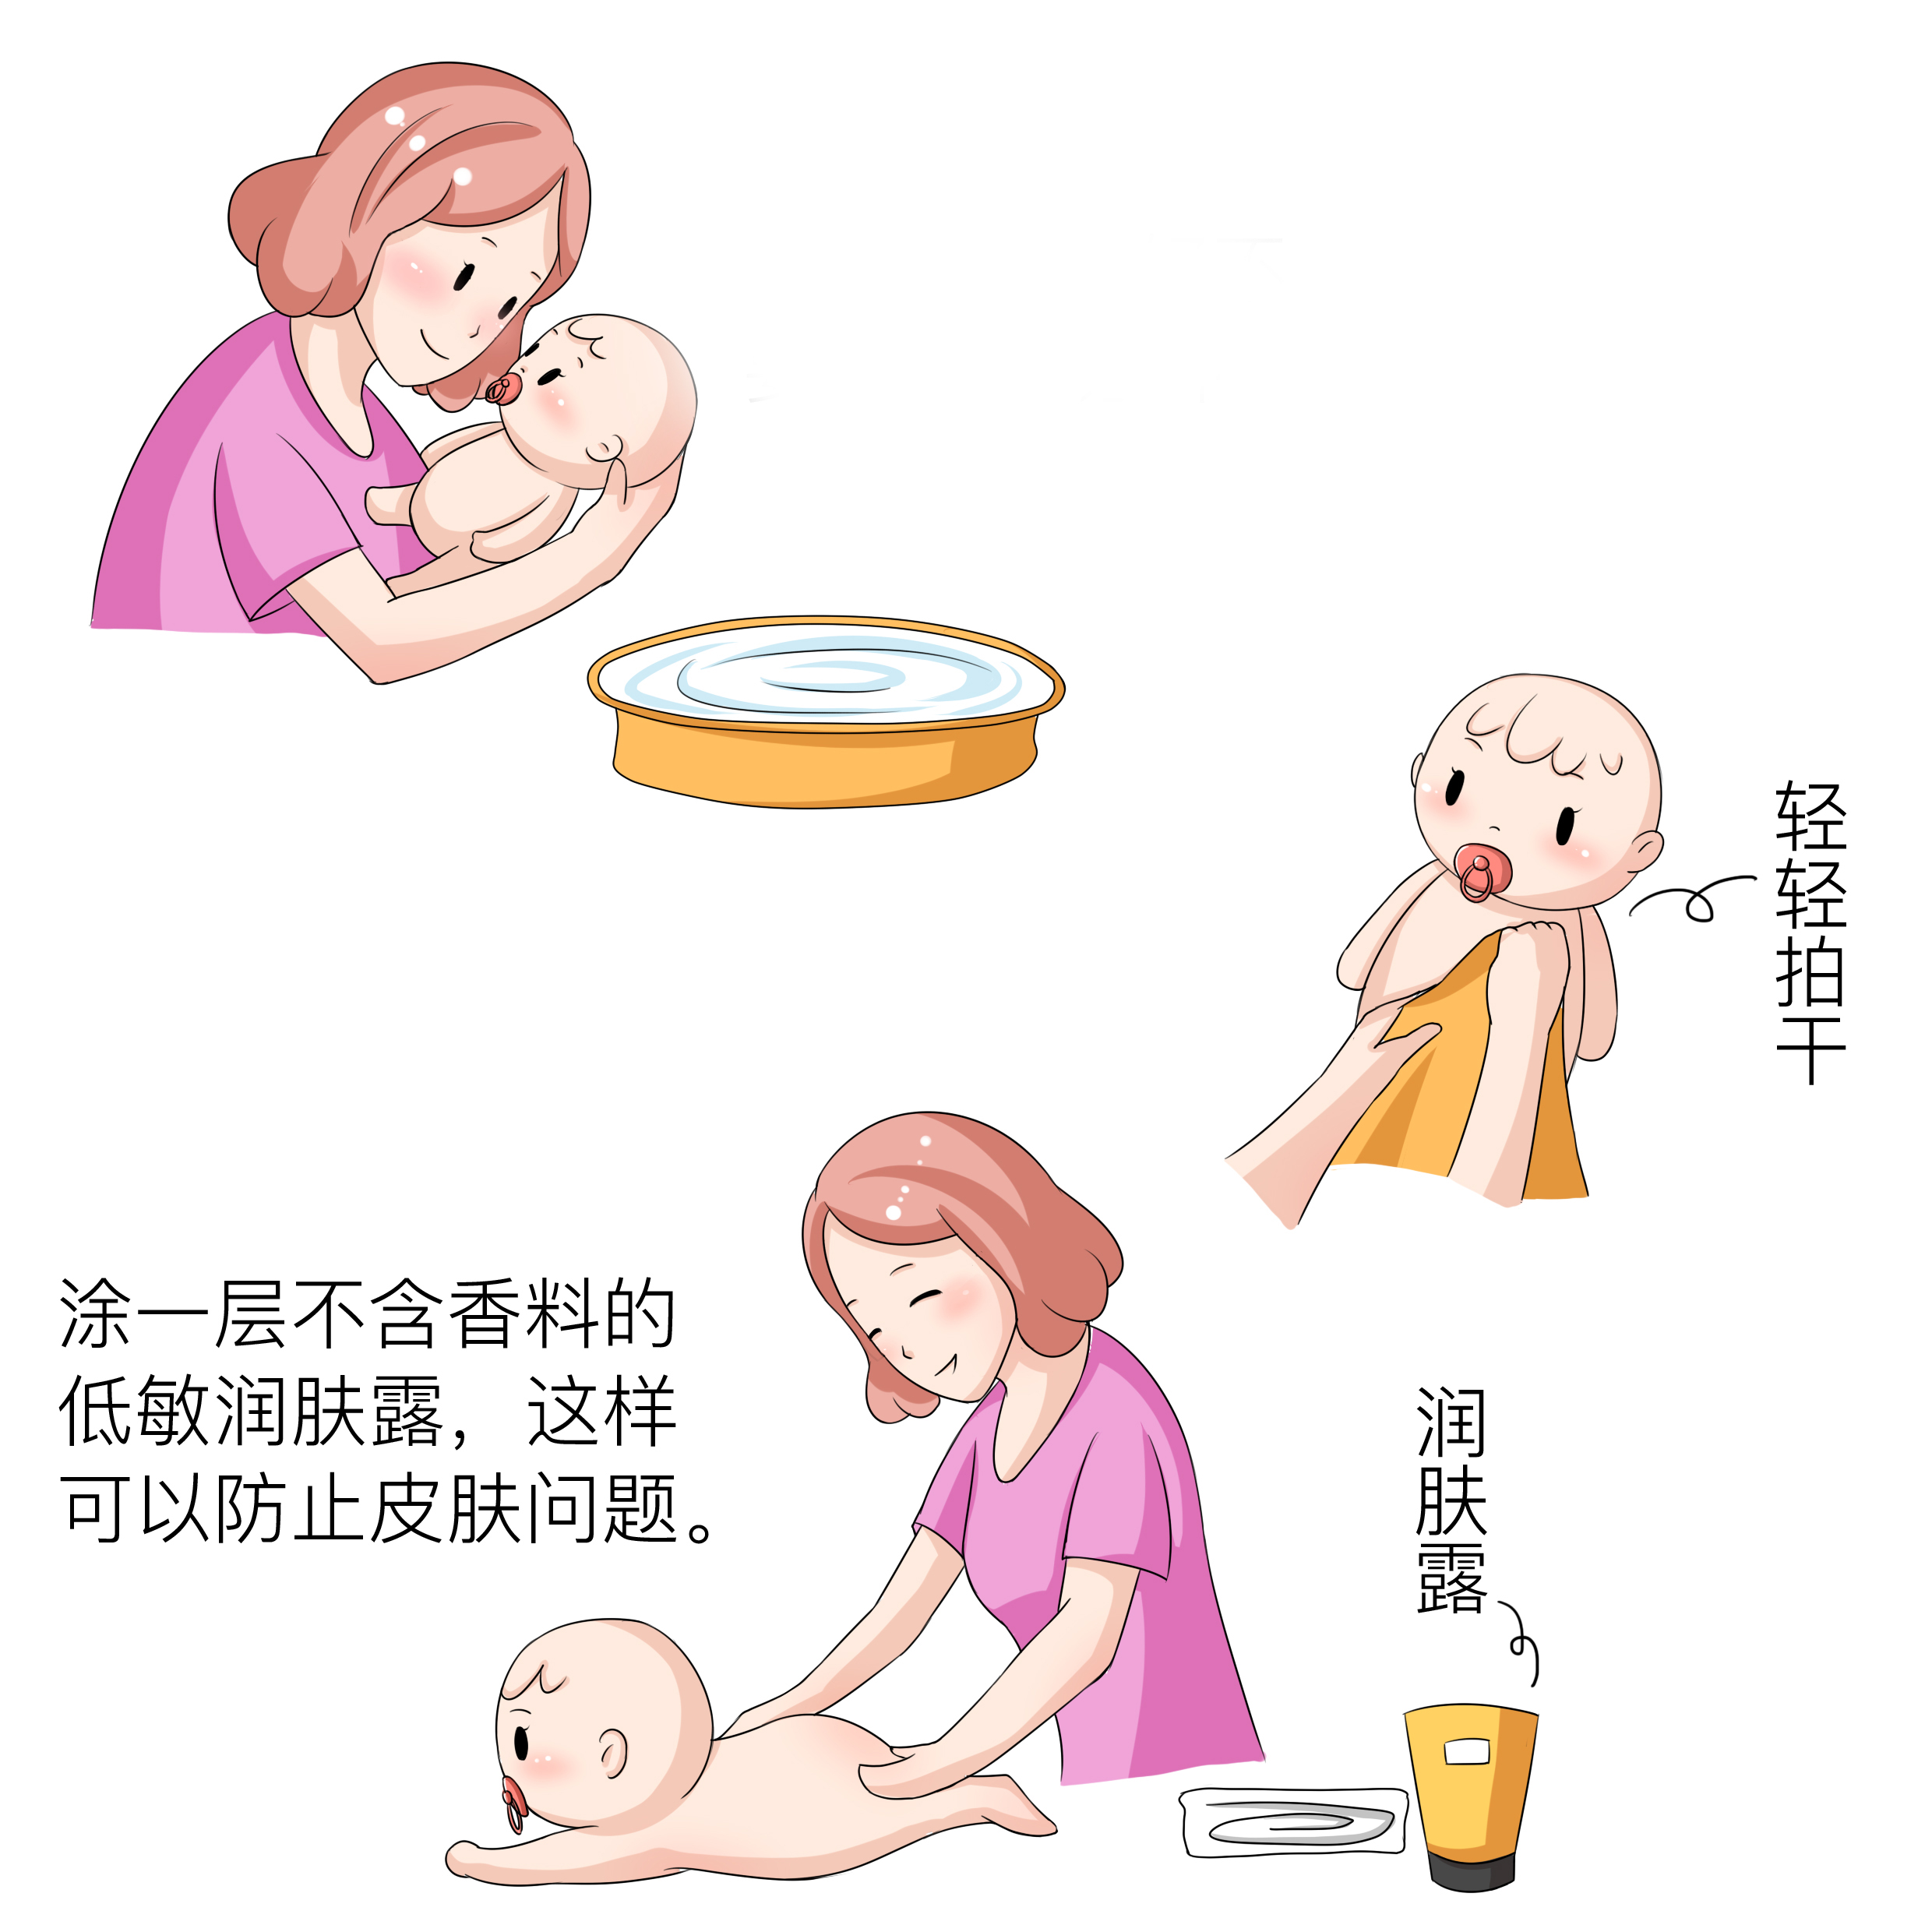 给宝宝洗澡的正确步骤和注意事项